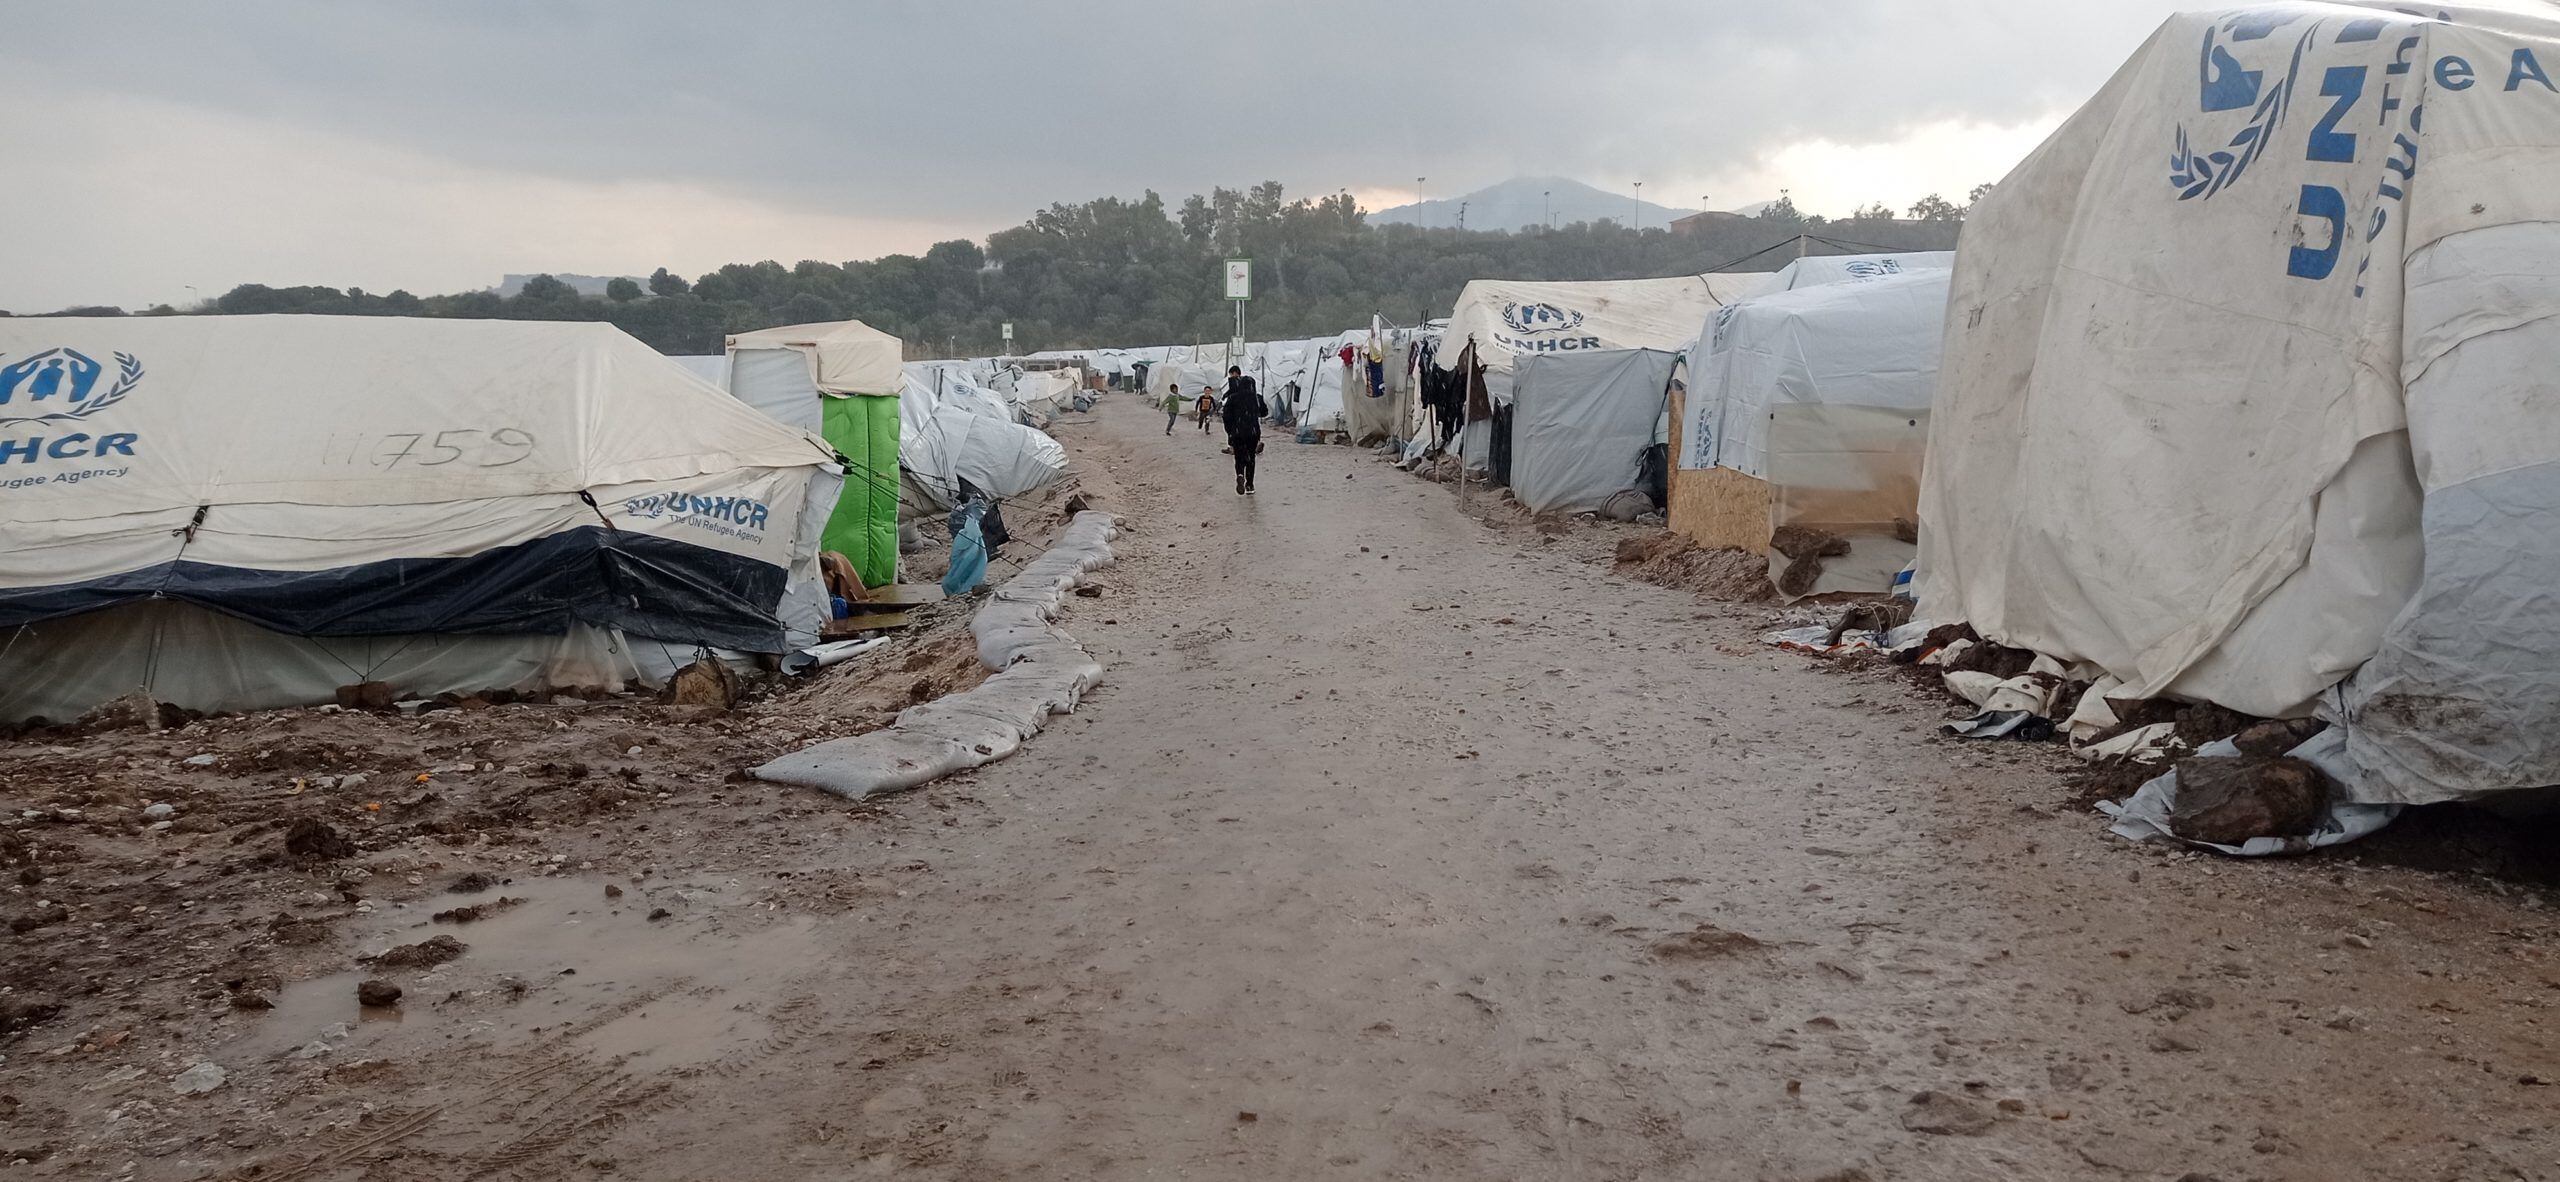 11-02-2021 Campo para personas refugiadas en LesbosSOCIEDAD AUTONOMÍASZAPOREAK